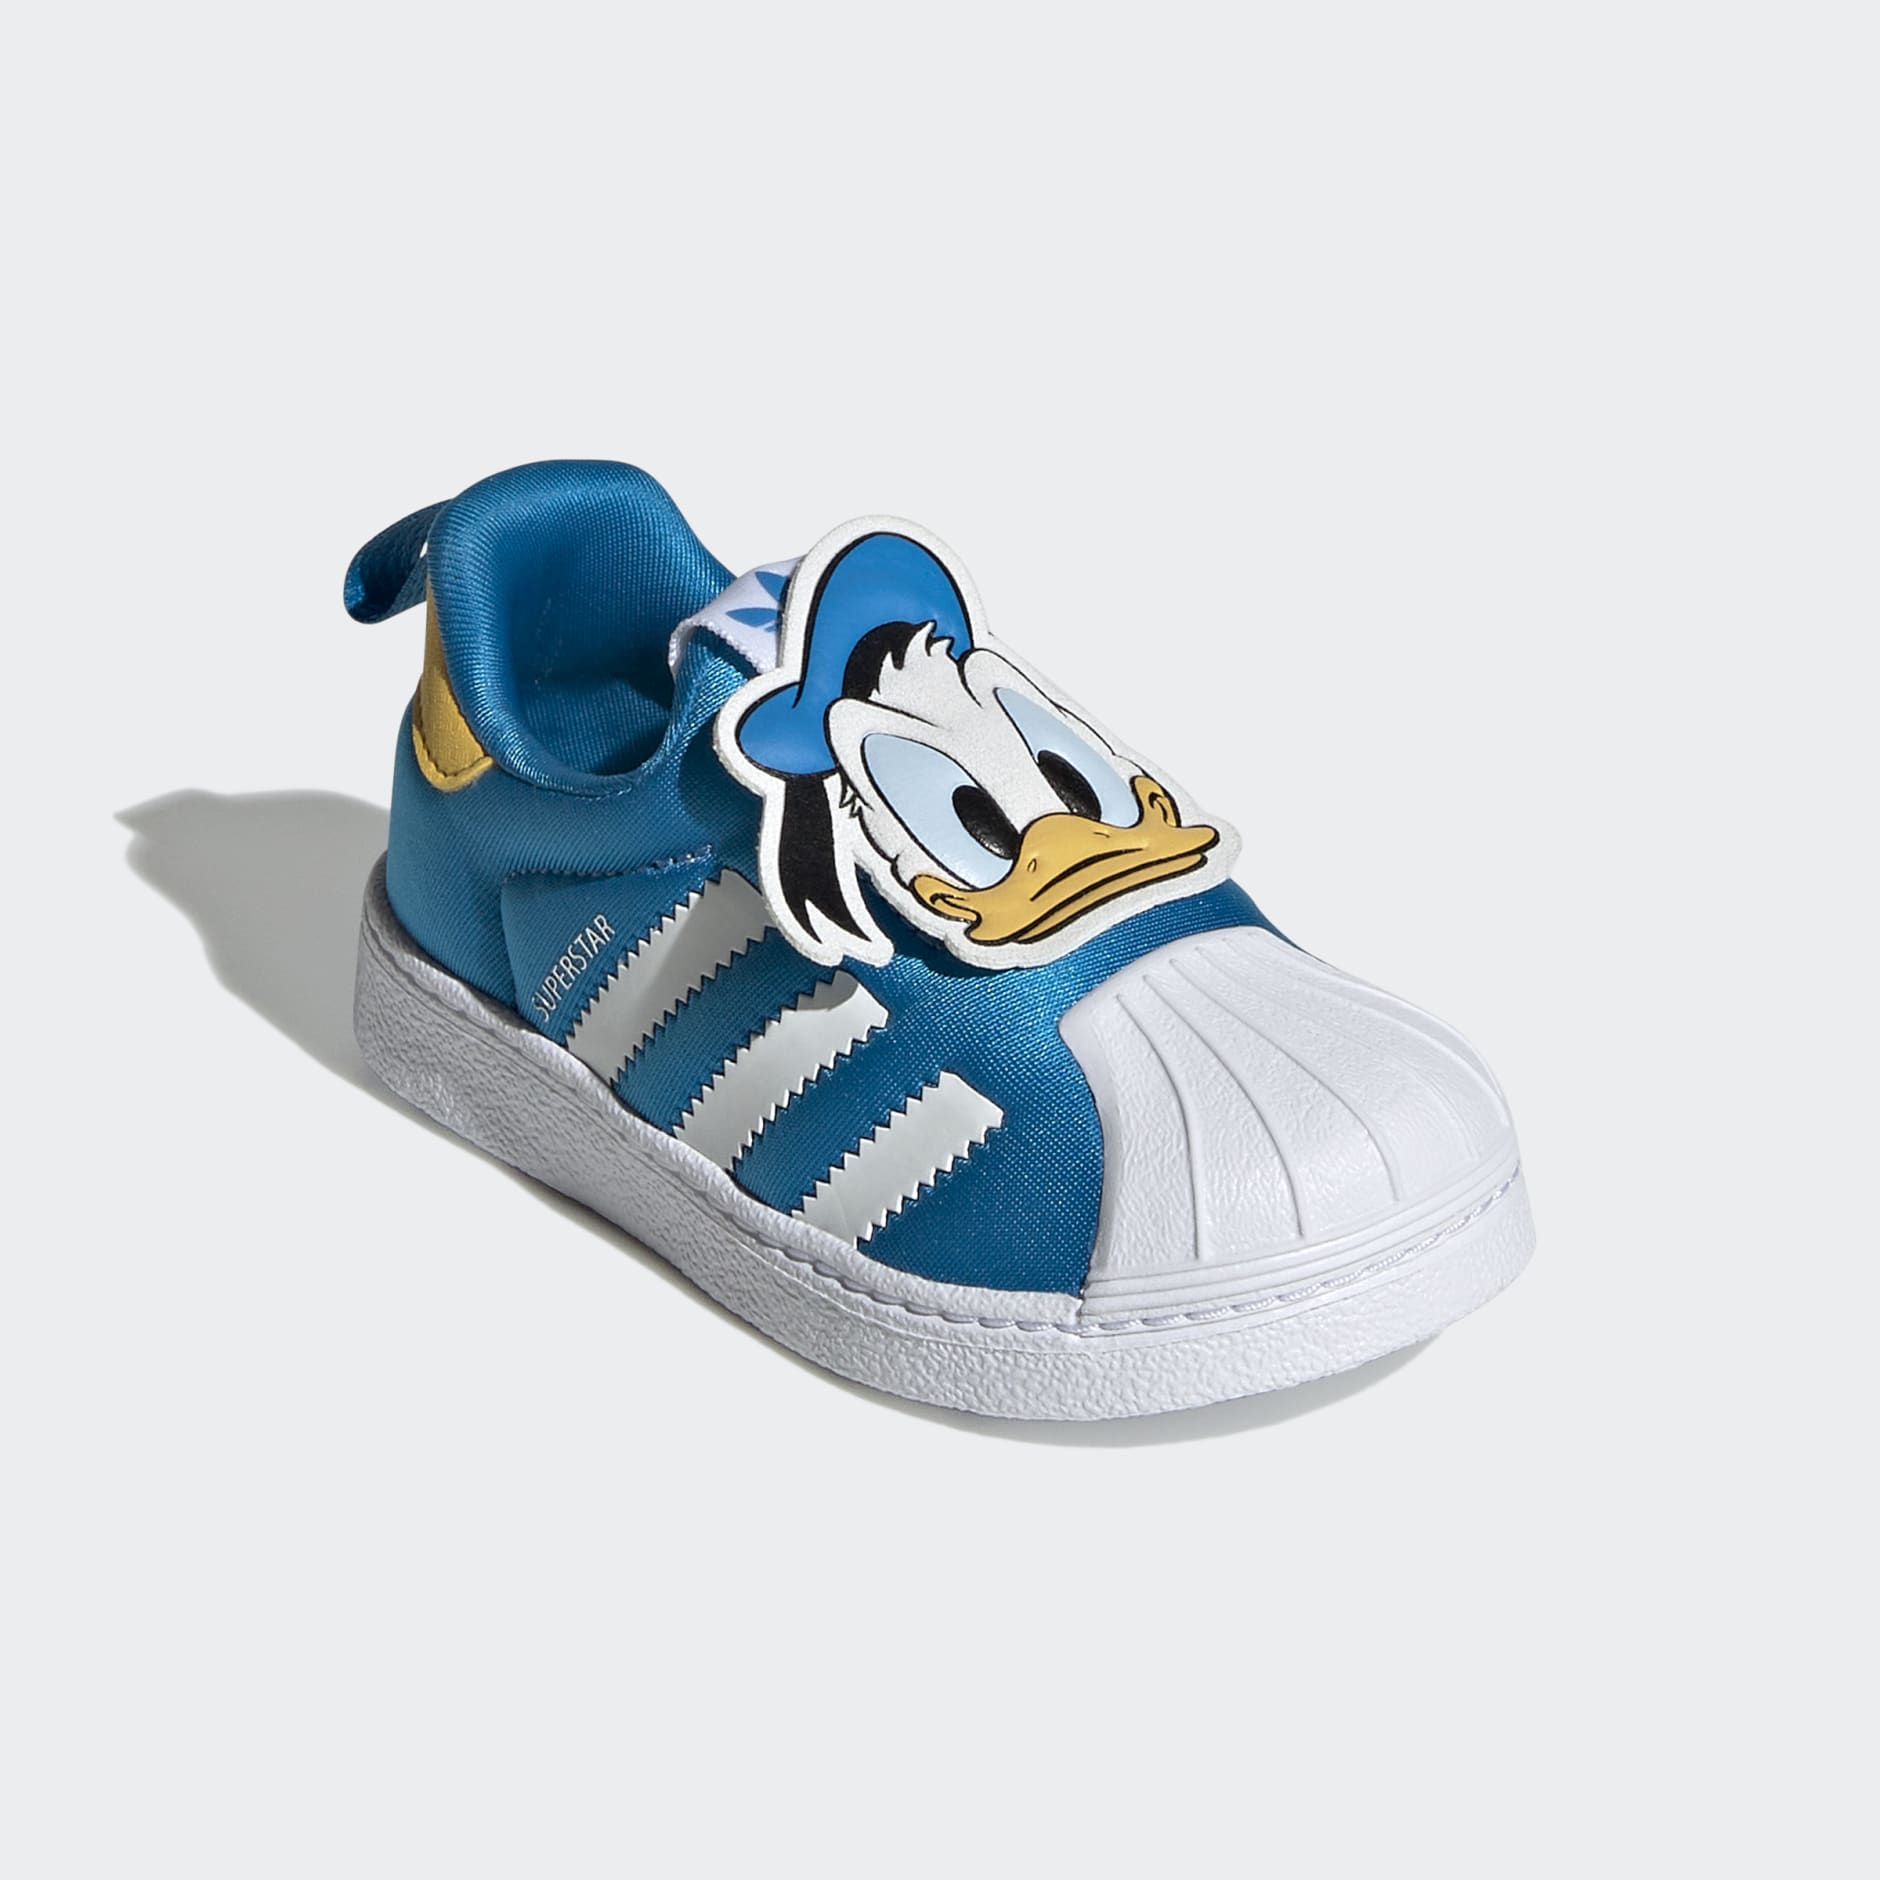 Disney Superstar 360 Shoes